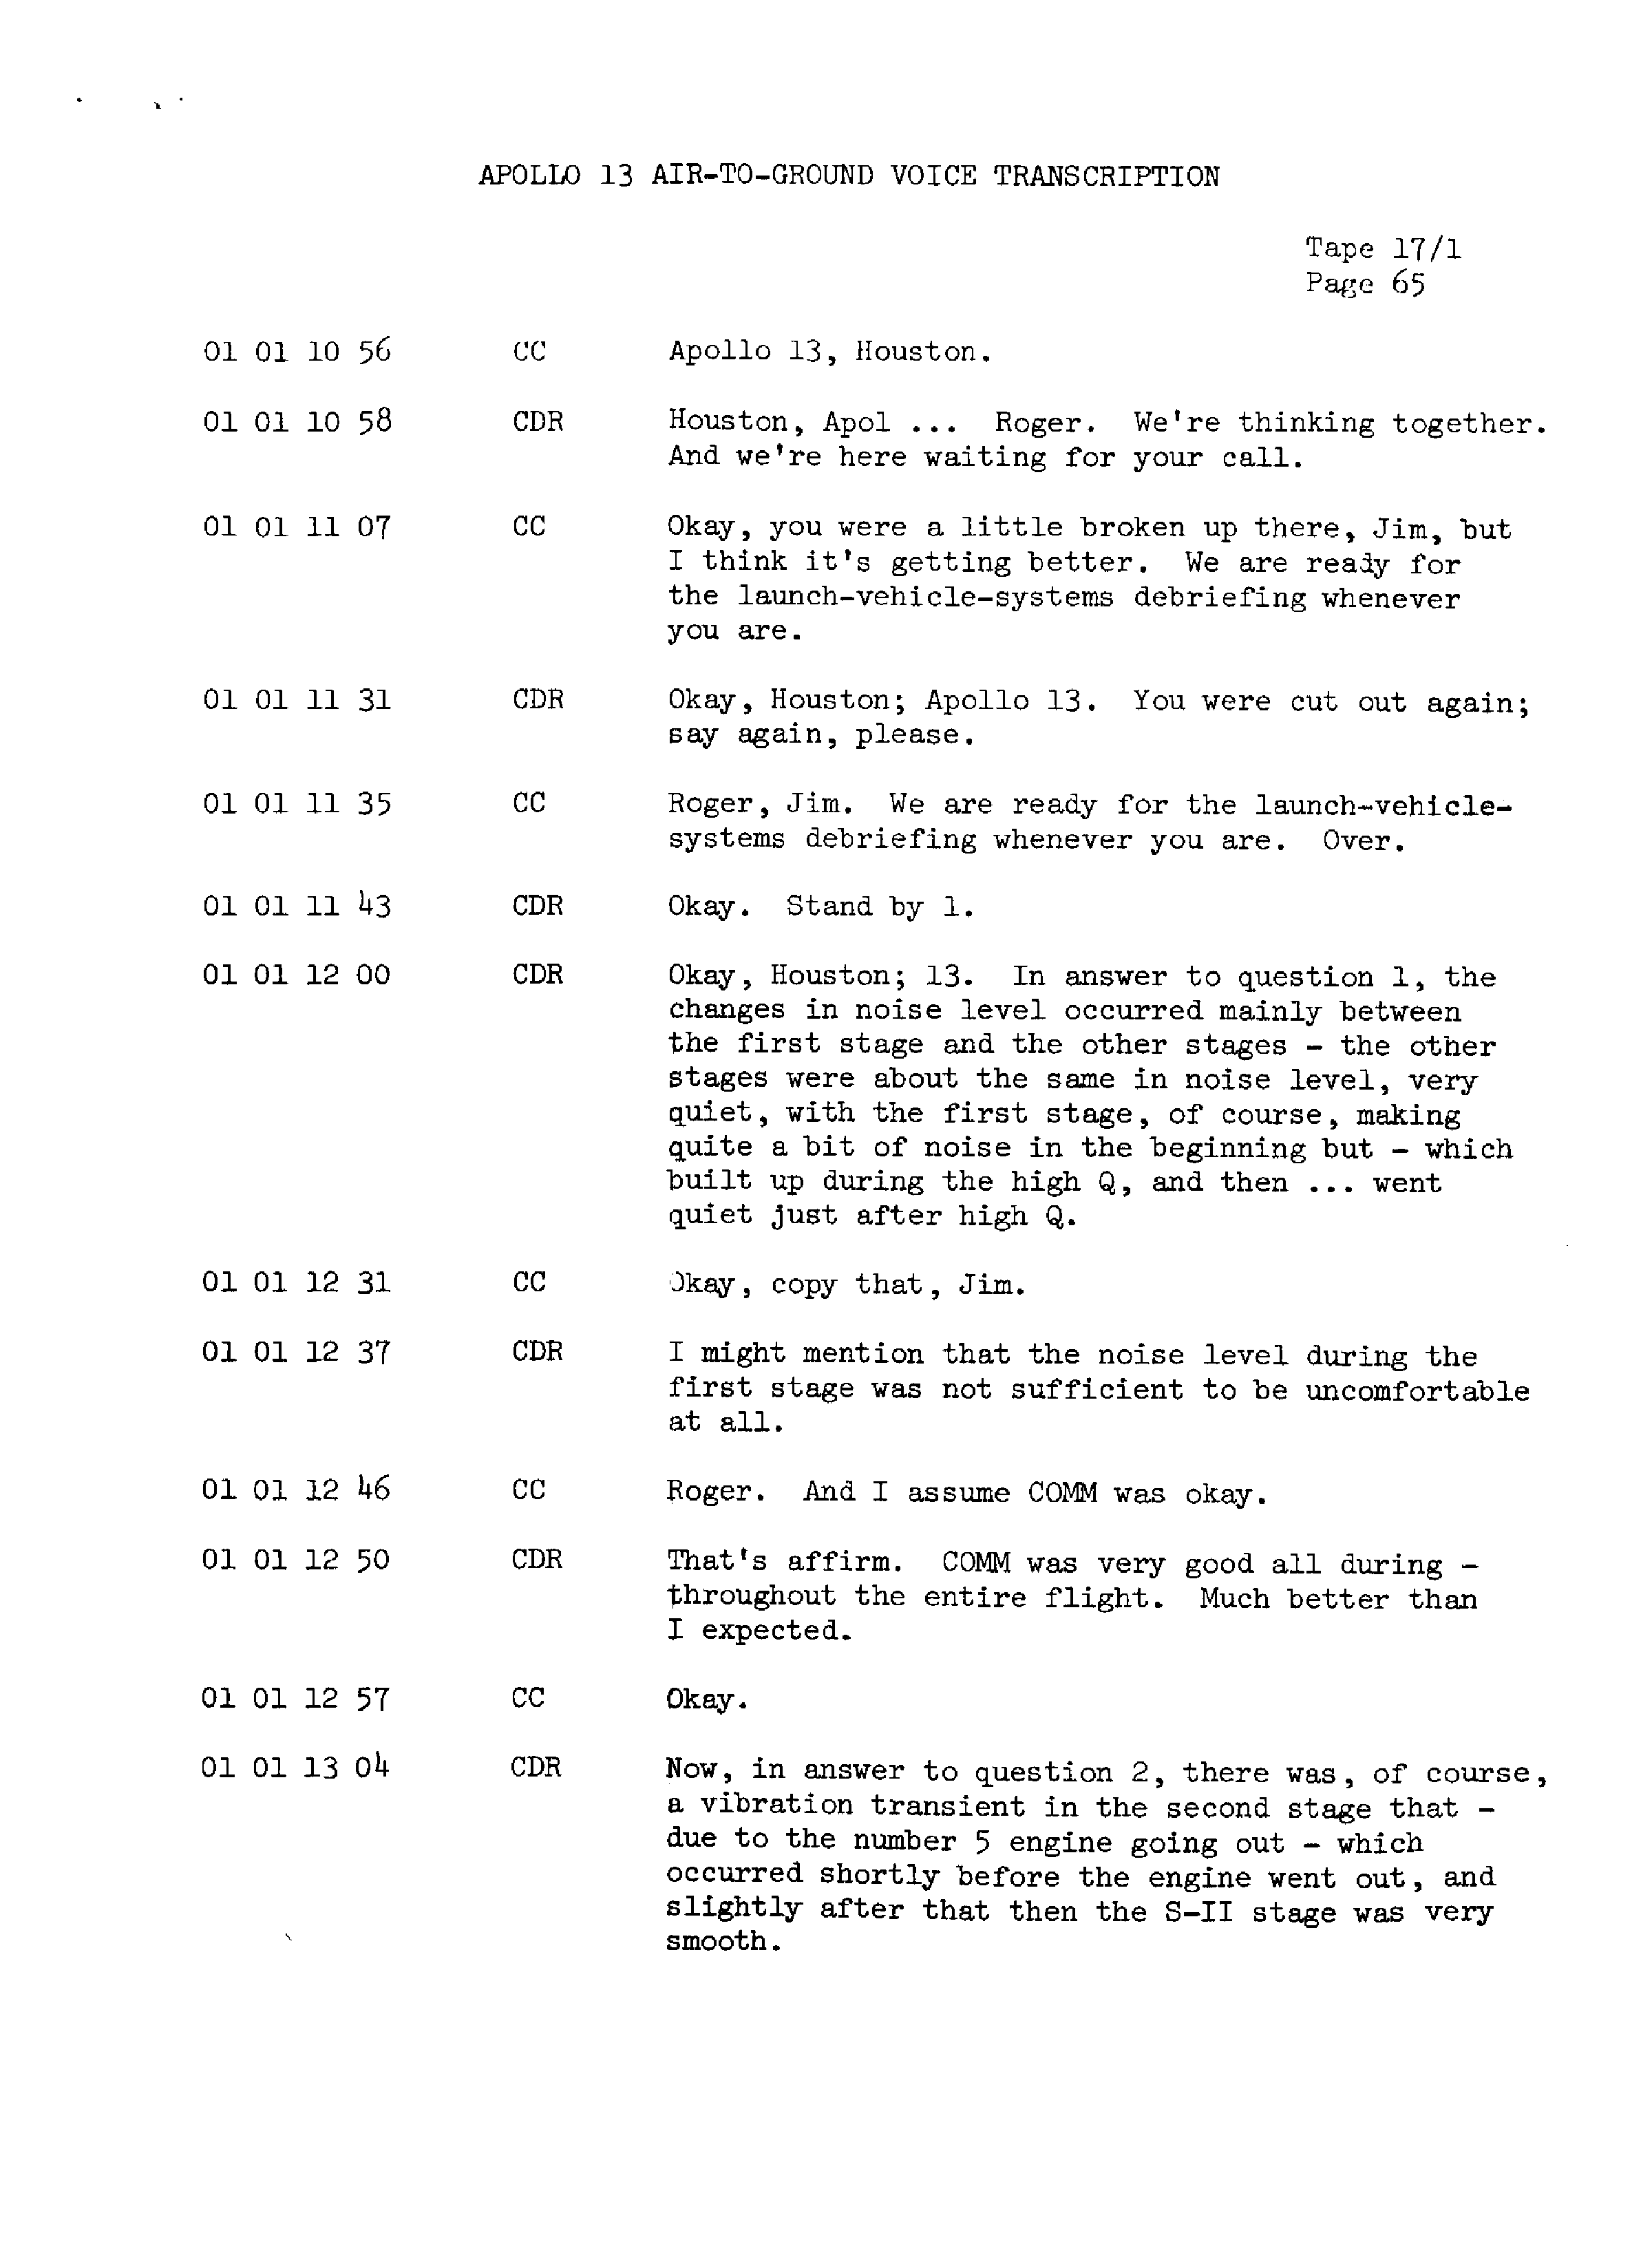 Page 72 of Apollo 13’s original transcript